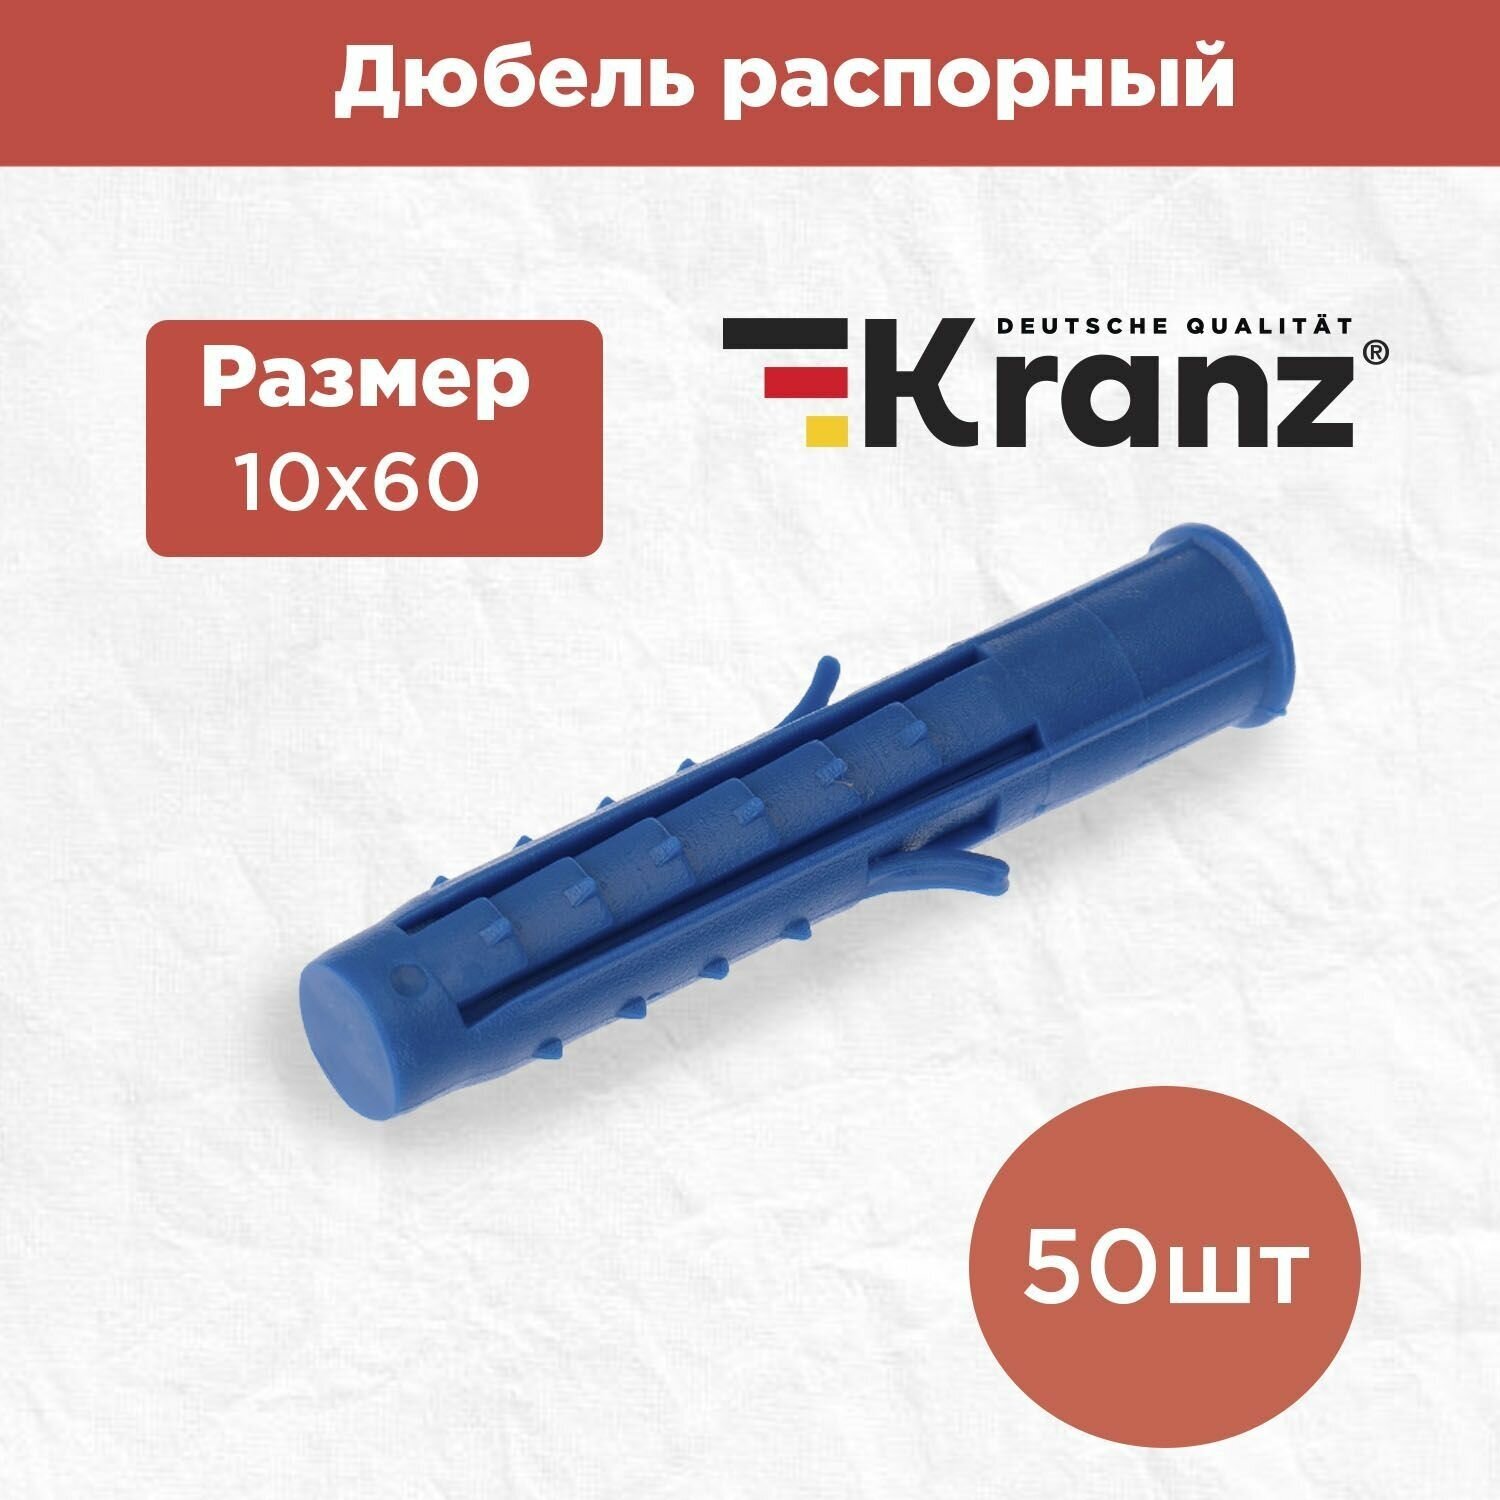 Дюбель распорный KRANZ высокопрочный 10х60 синий 50 штук в упаковке